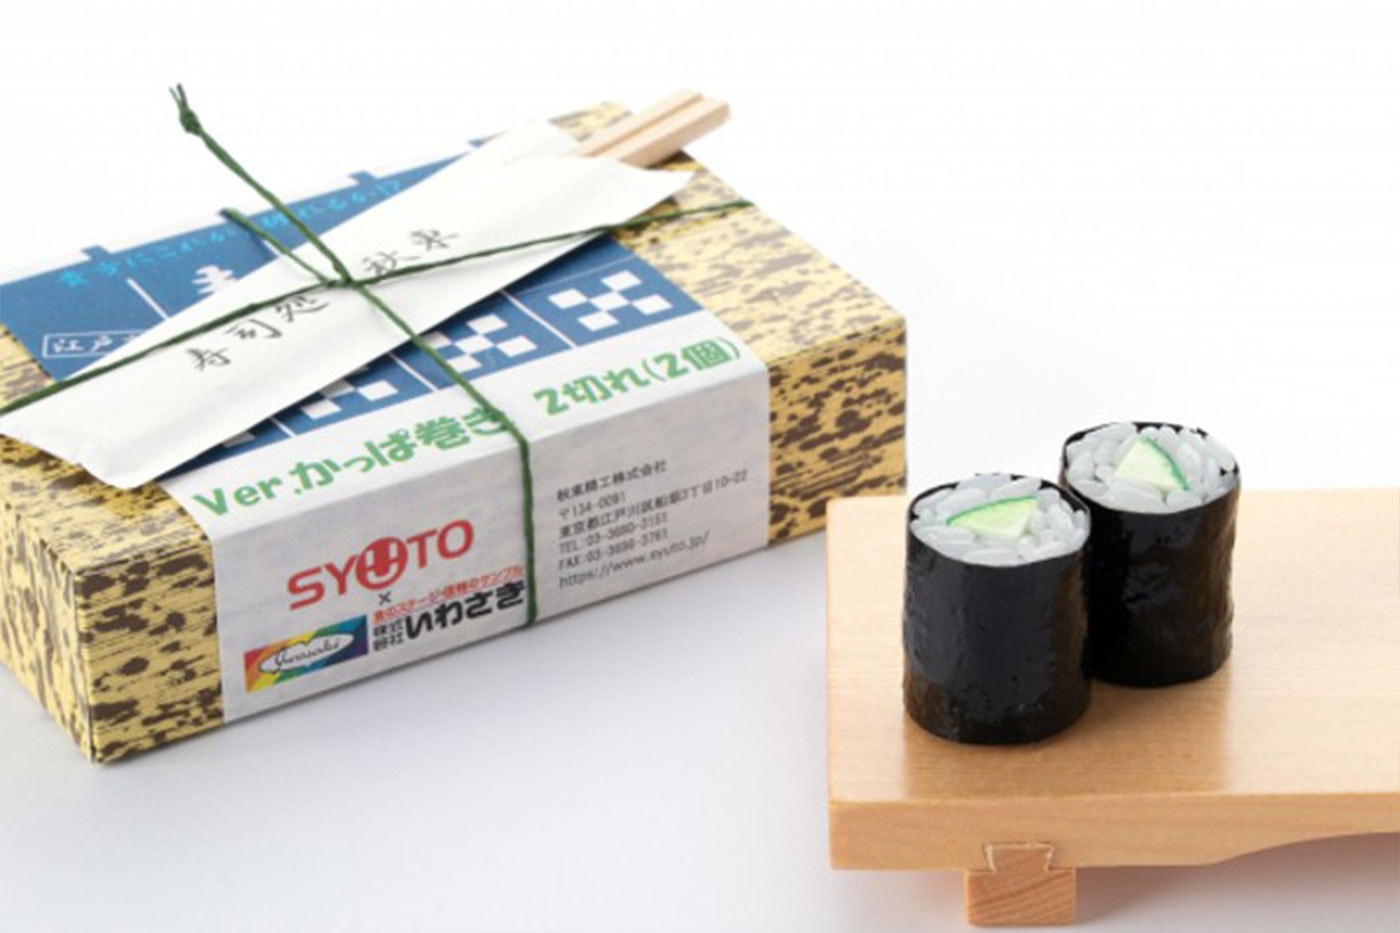 Toy Maker Syuto Crafts Cucumber Maki Grain By Grain Plastic Model Build Release Price Info Amazon